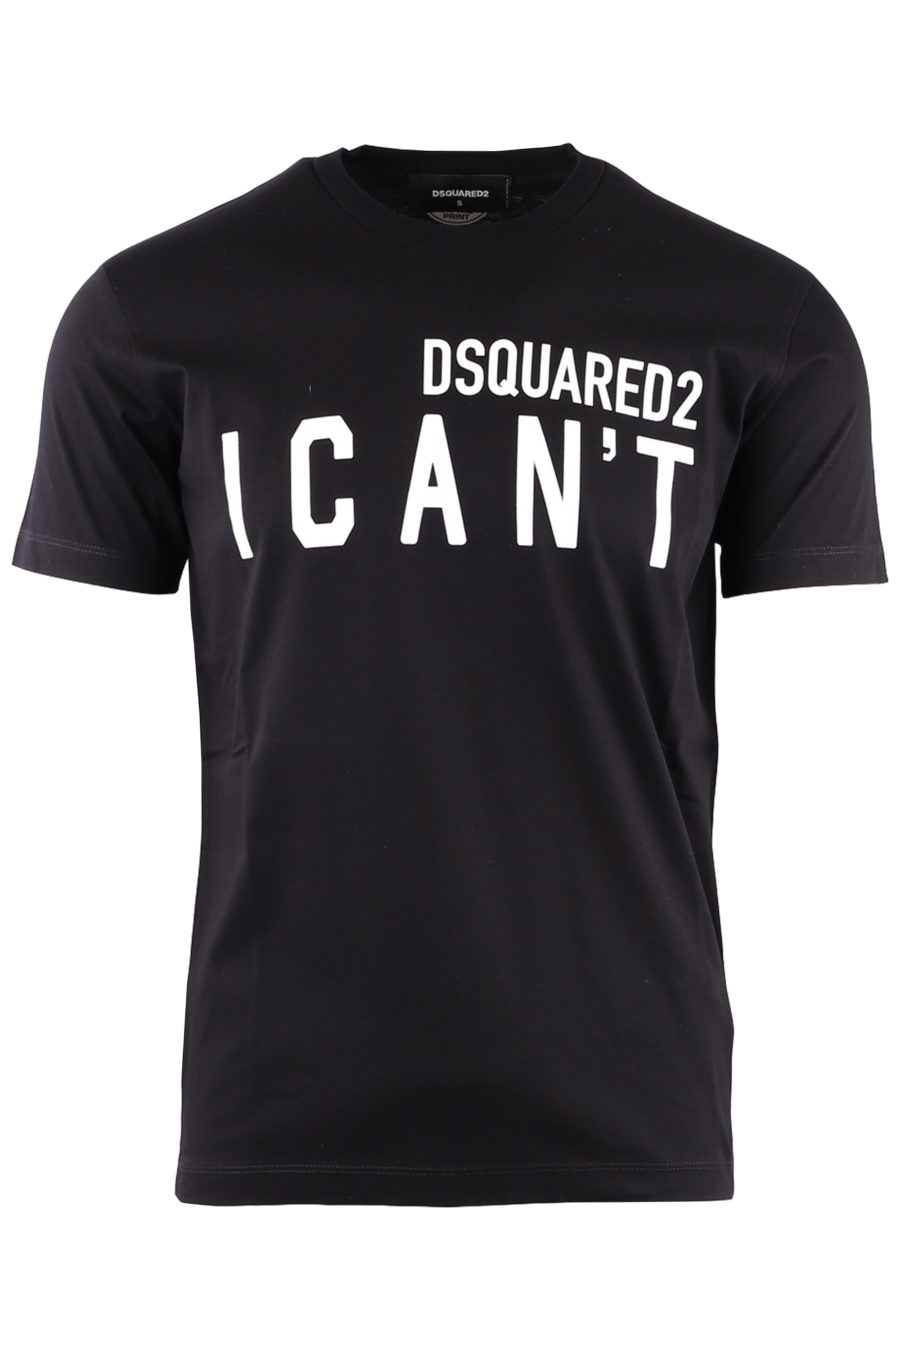 Dsquared2 - Camiseta negra 